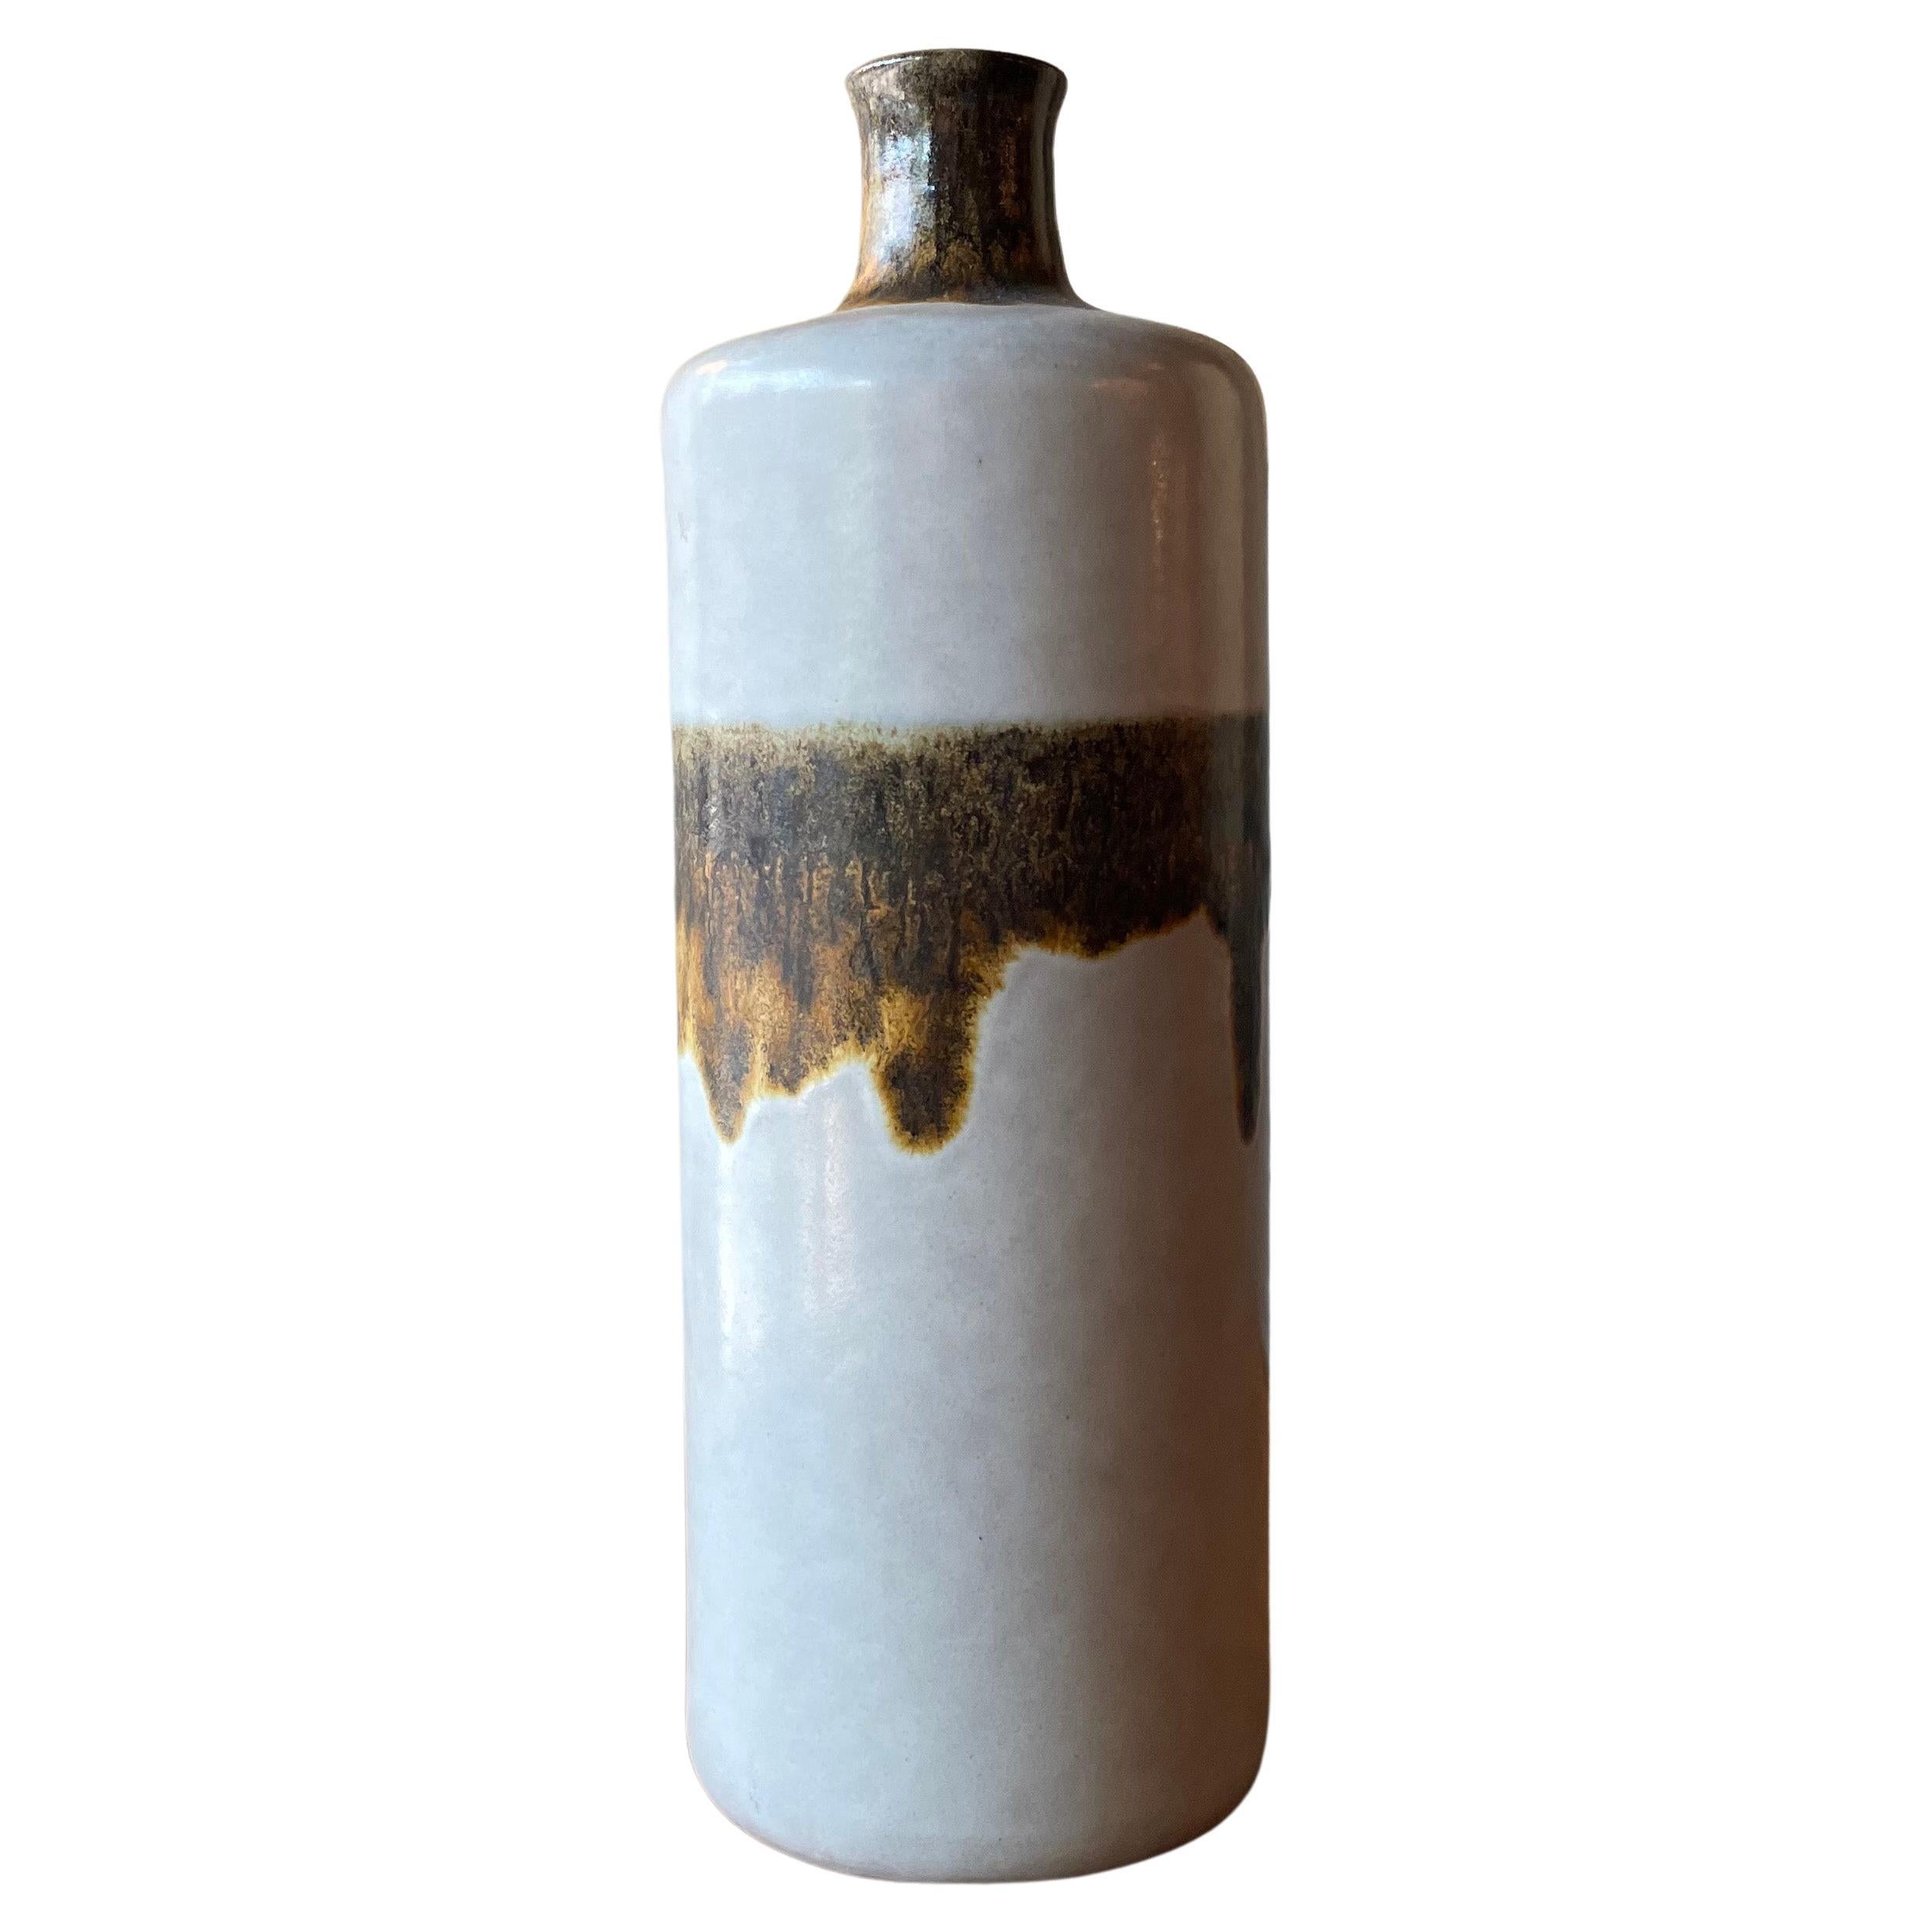 Earthtone Art Pottery Vase by Alvino Bagni for Raymor For Sale